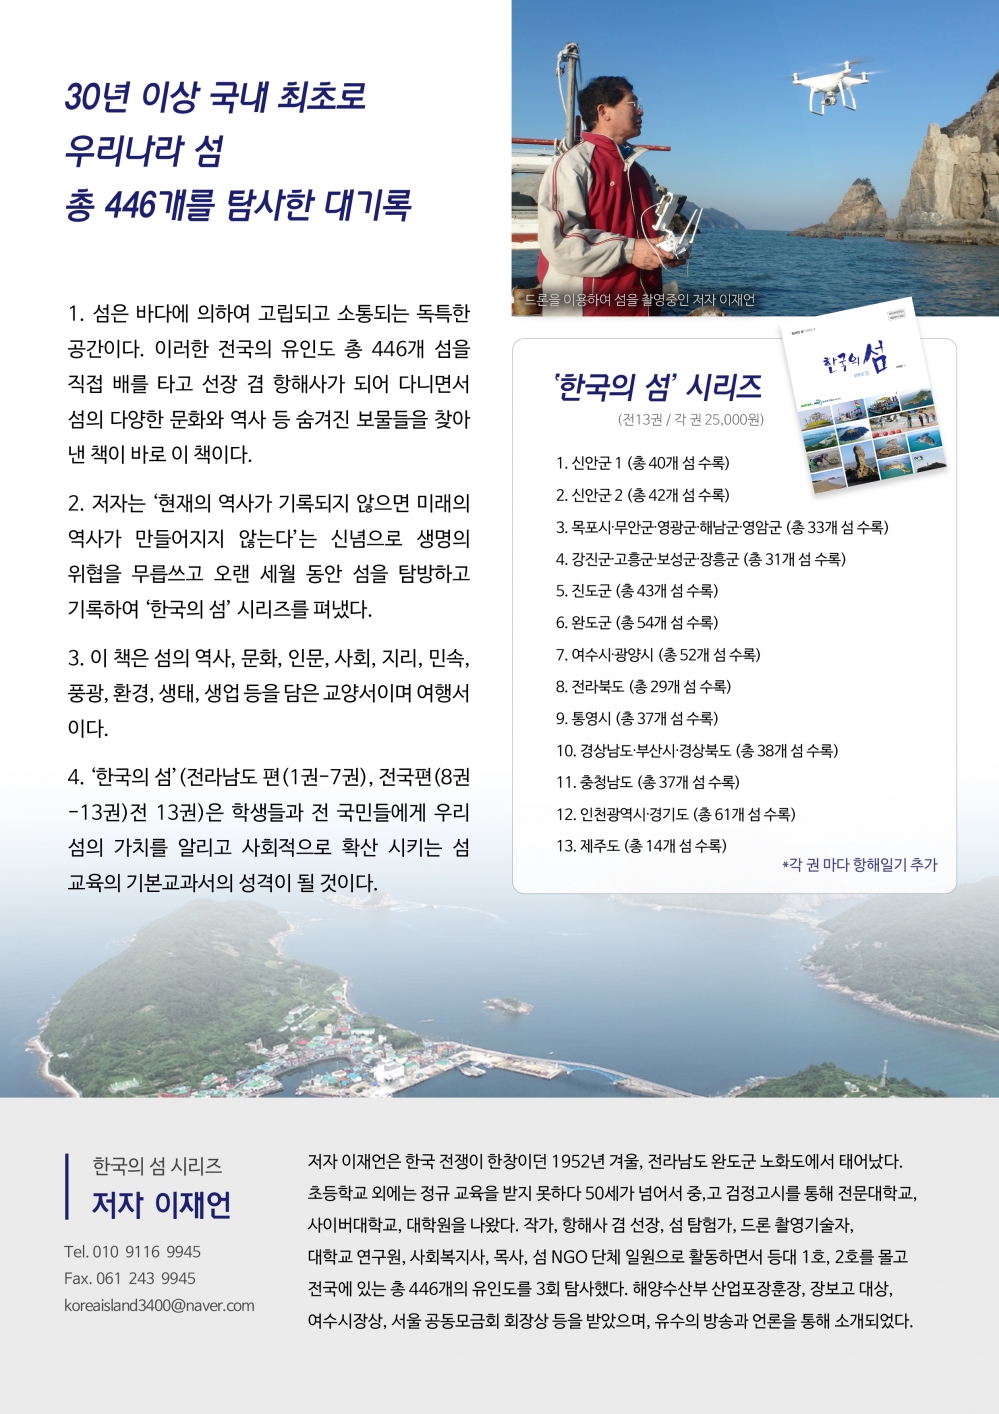 희망도서 - 네이버의 재정 후원으로 집필한 시리즈 13권 2쇄 책 소개 첨부이미지 : 한국의 섬 홍보지 2.jpg